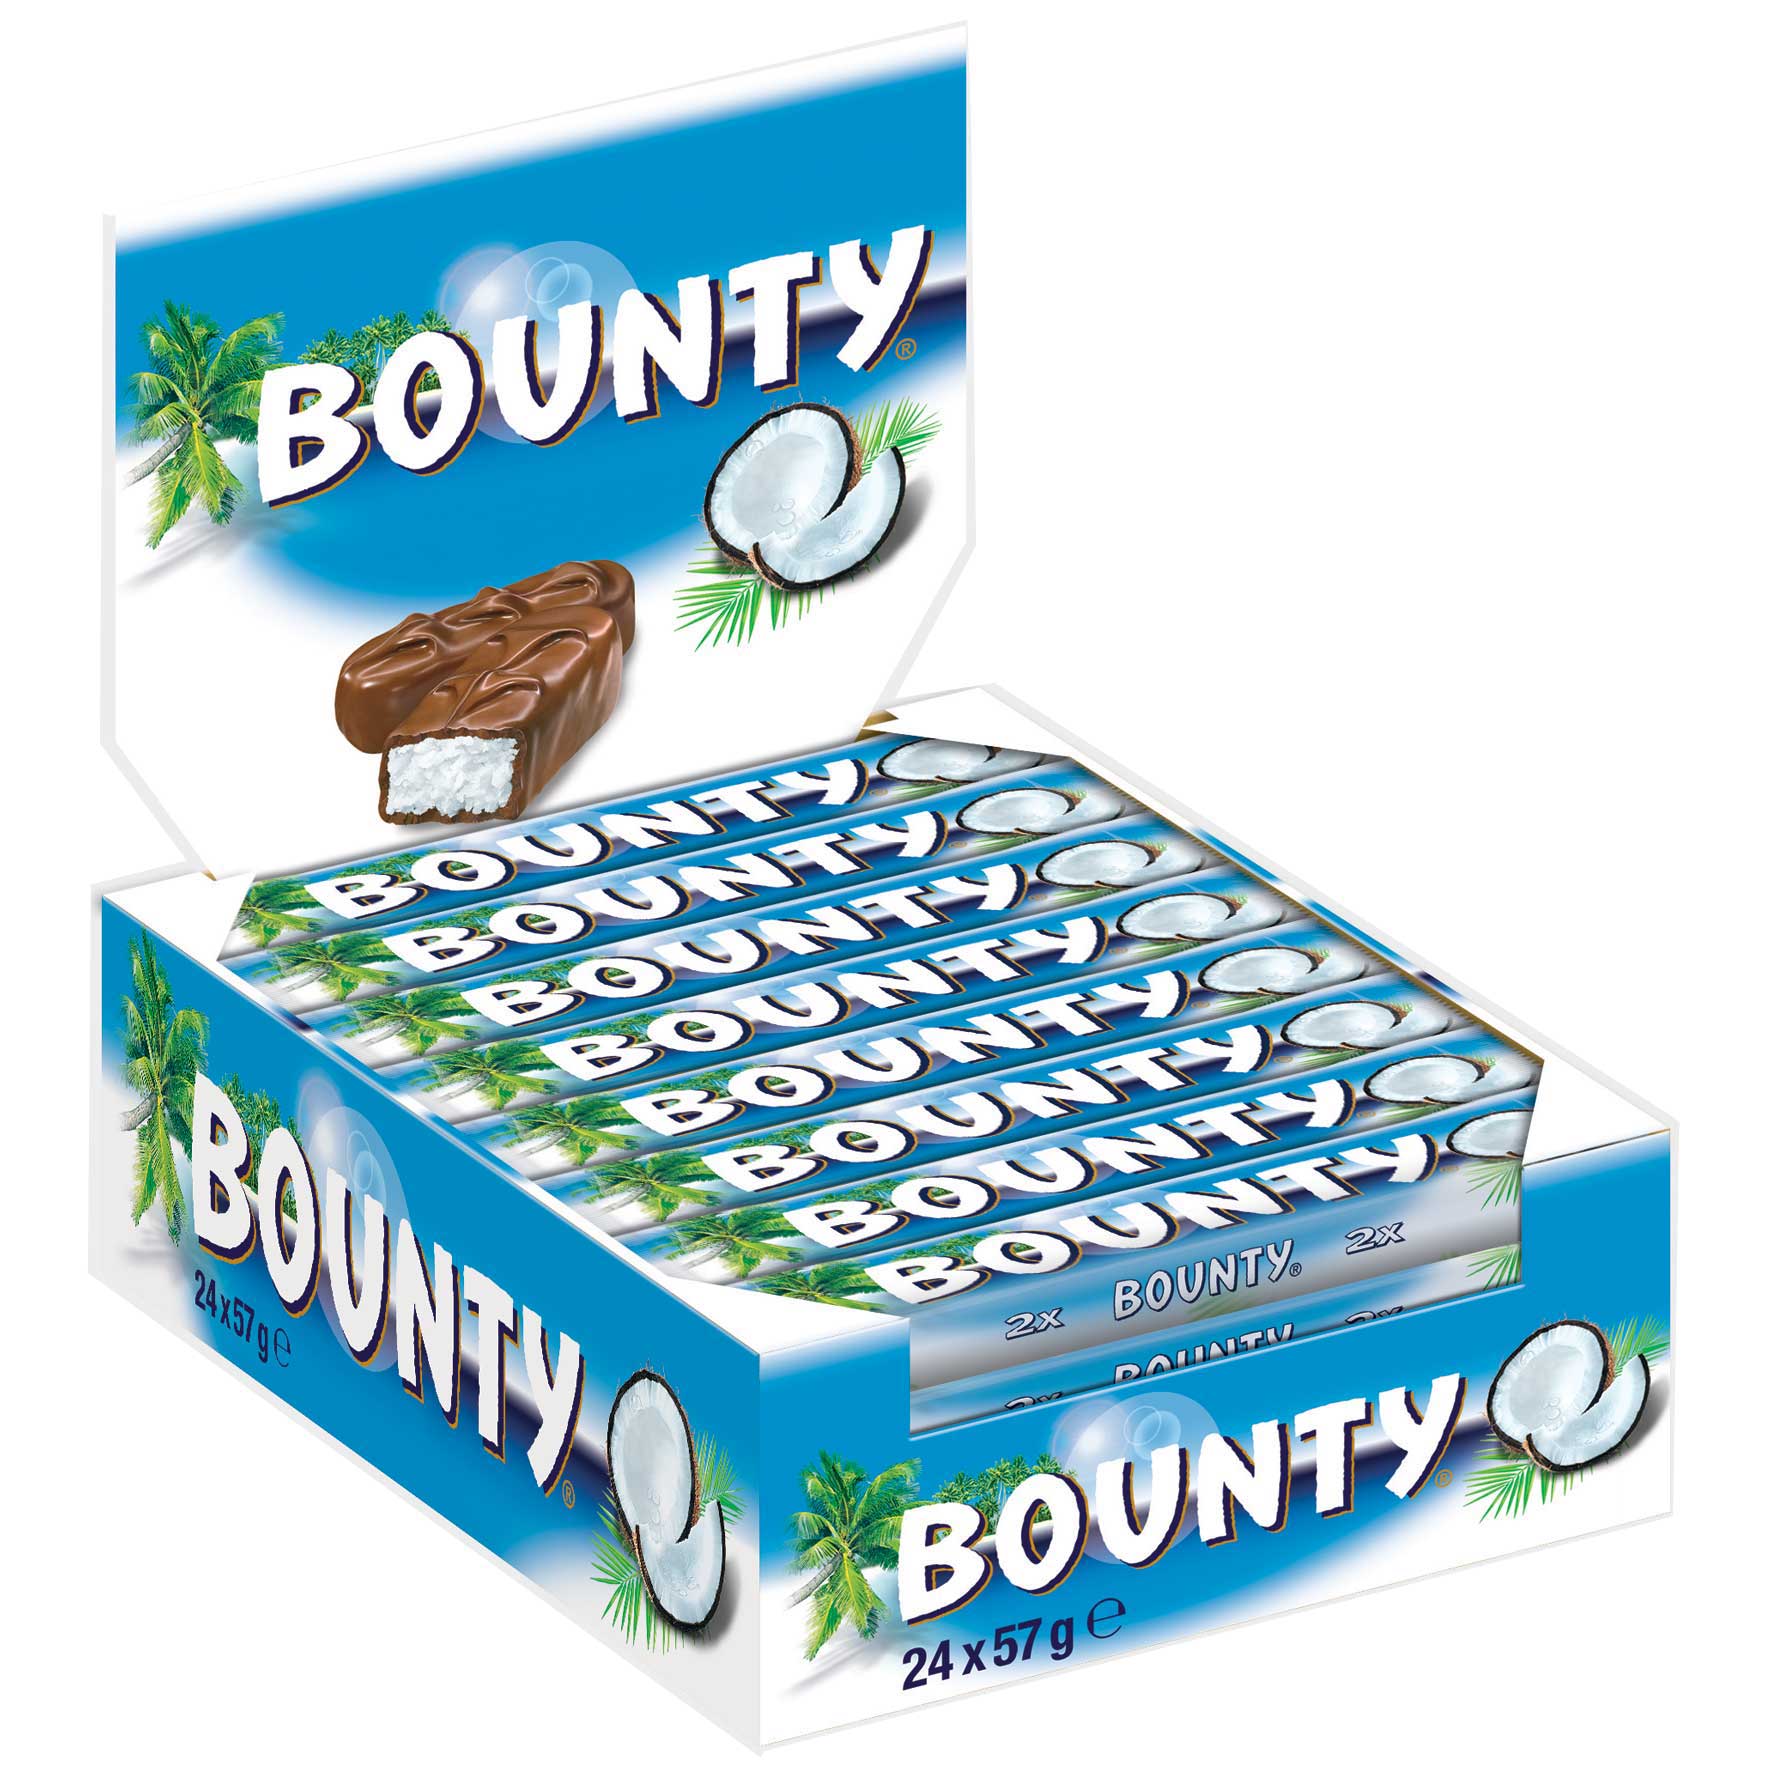 Bounty 24x57g | Online kaufen im World of Sweets Shop